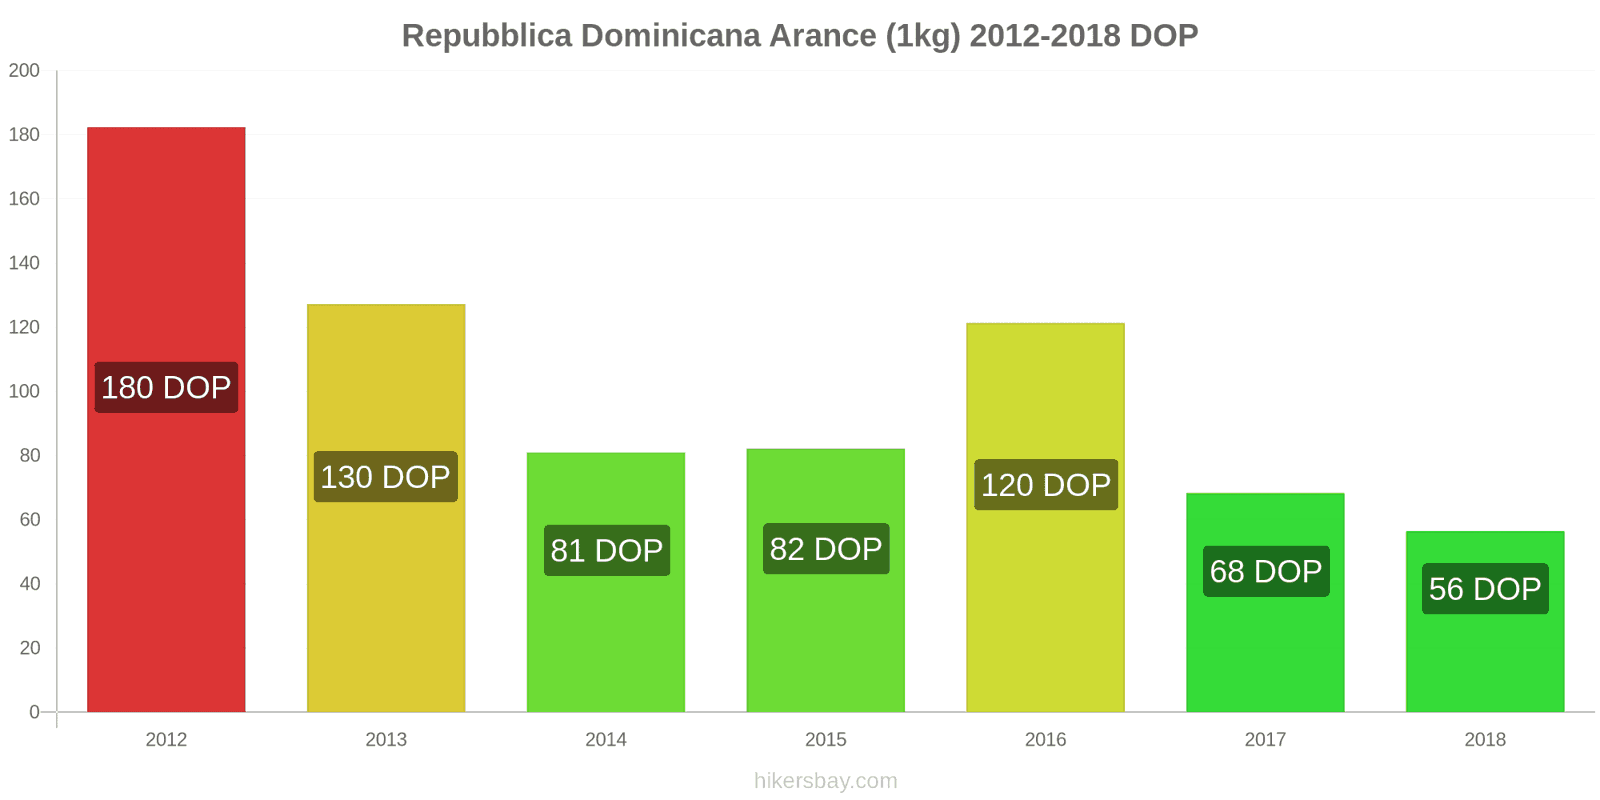 Repubblica Dominicana cambi di prezzo Arance (1kg) hikersbay.com